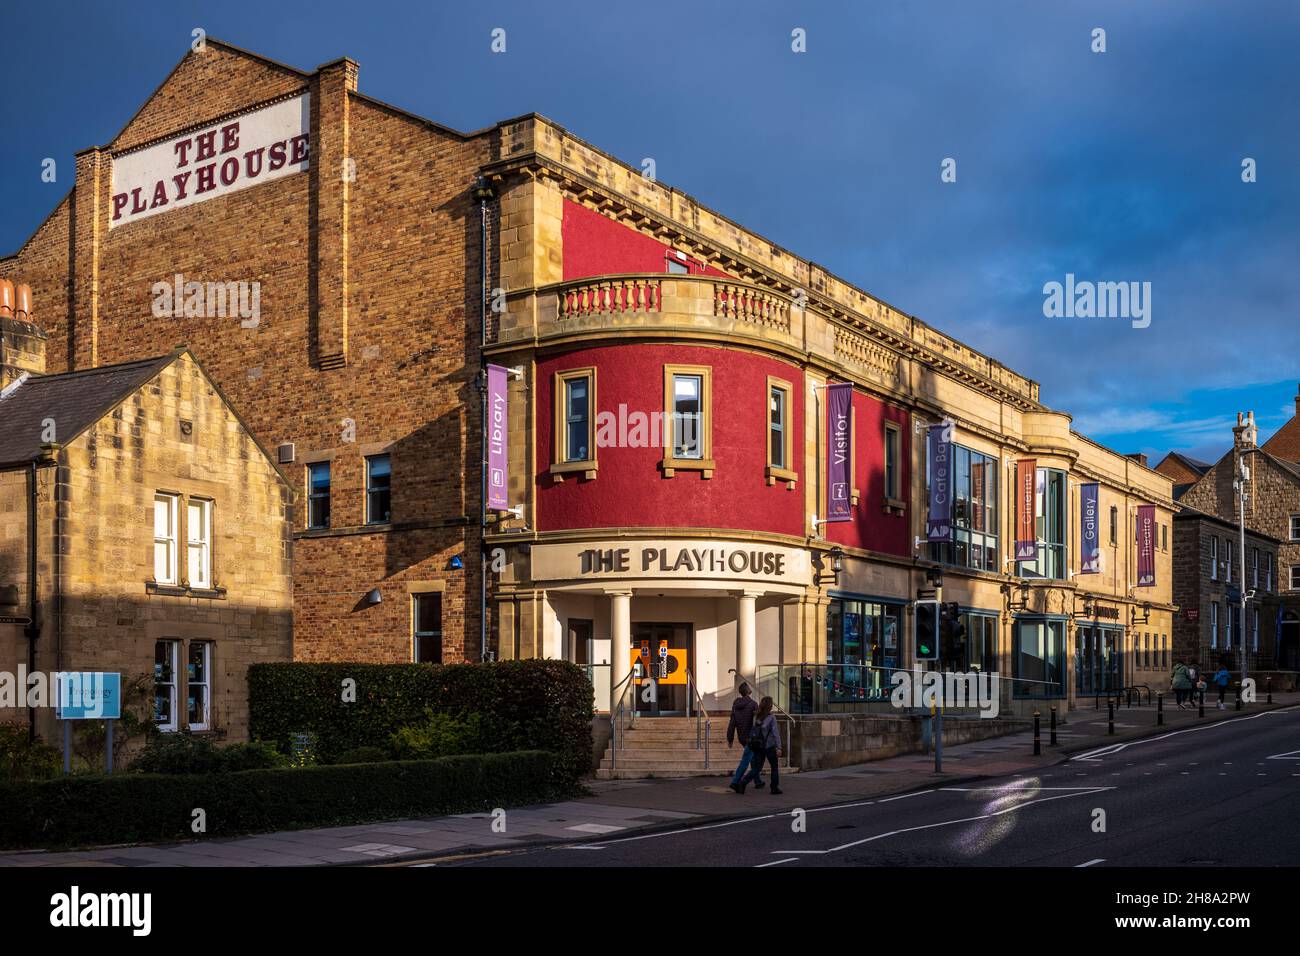 Le théâtre Playhouse Alnwick Northumberland UK - construit en 1925 comme salle de cinéma et de musique, rénové et rouvert en 1990.NTC Touring Theatre Company. Banque D'Images